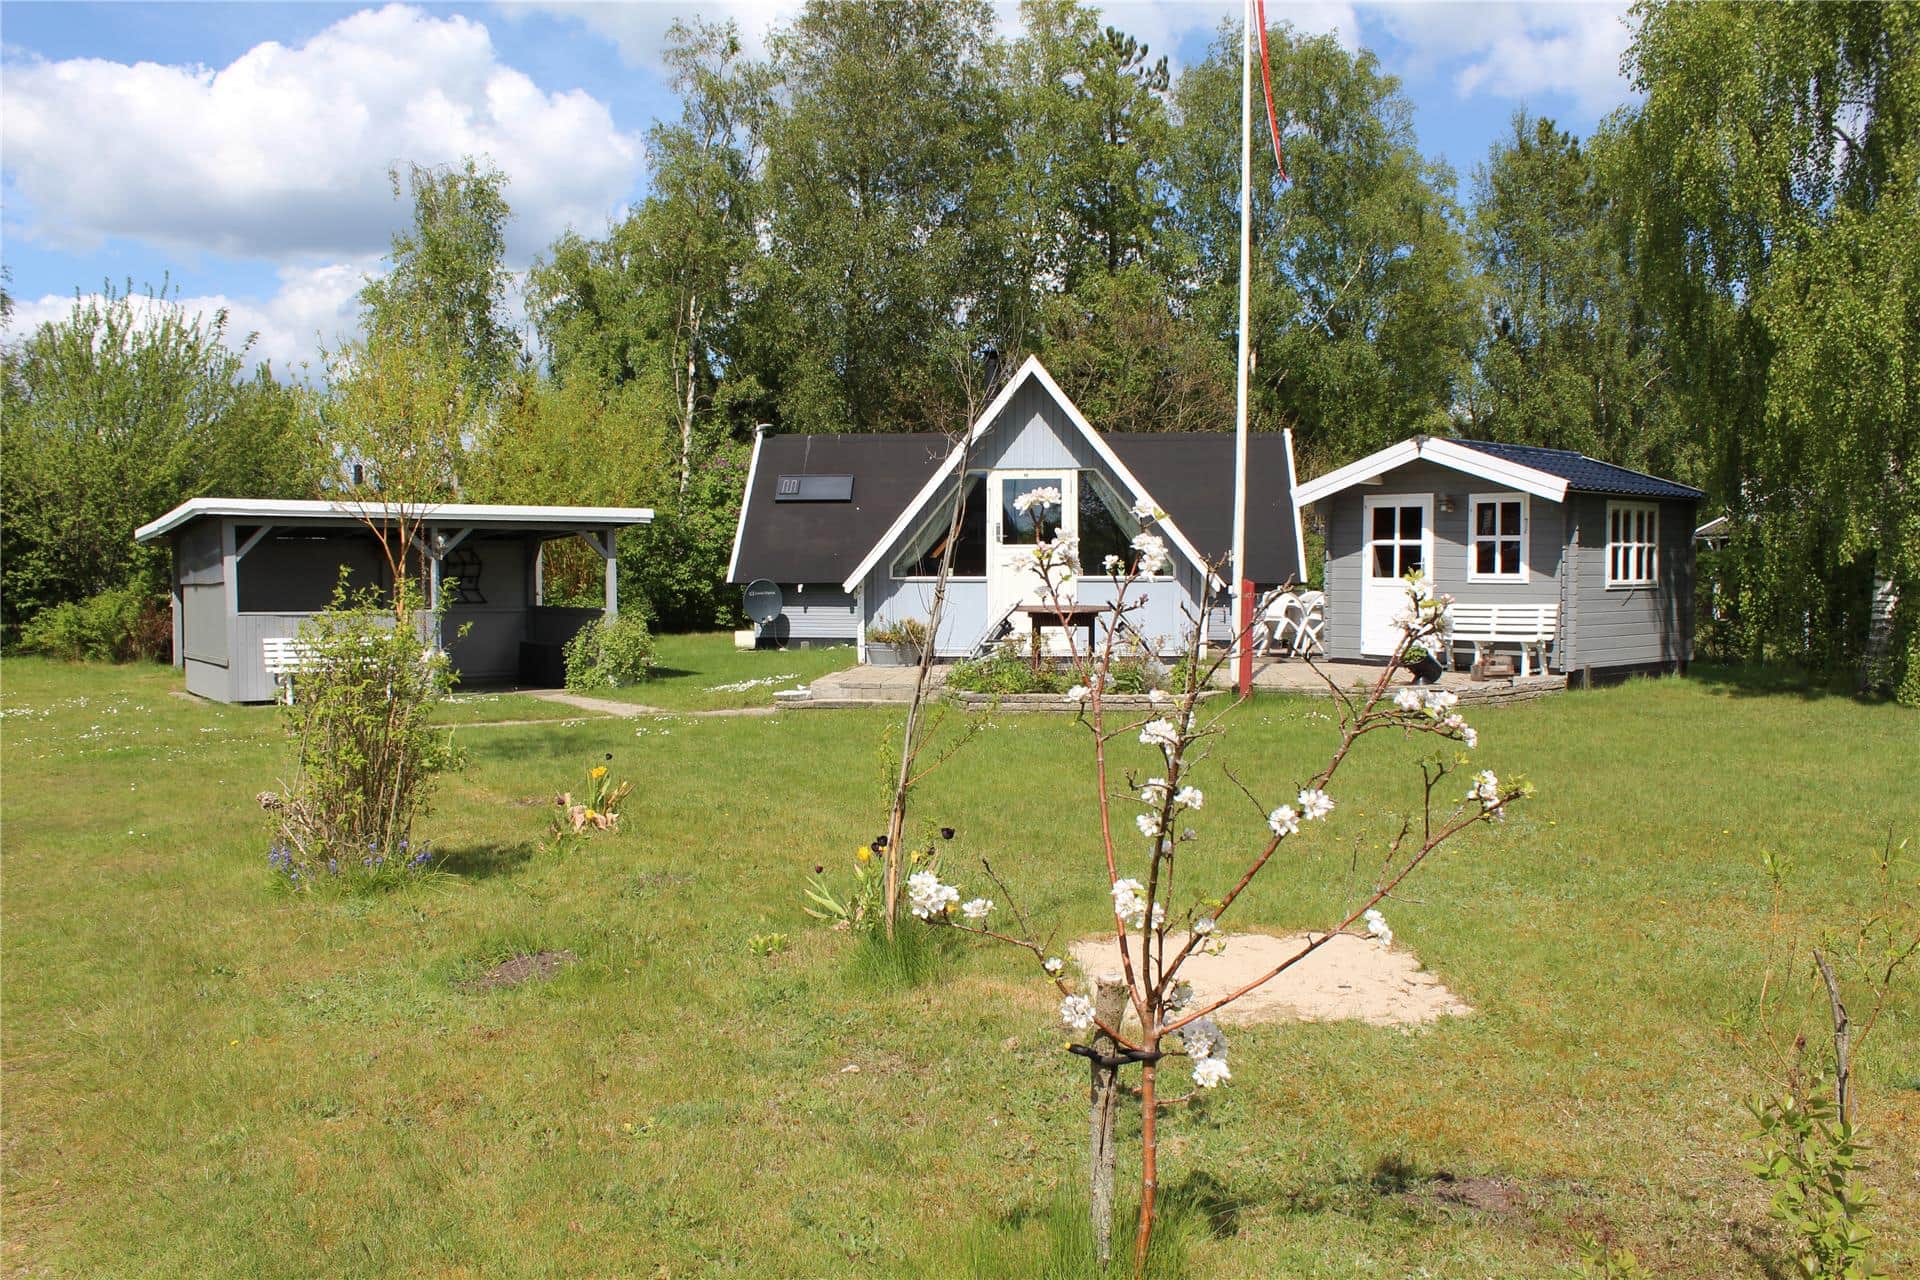 Image 2-3 Holiday-home M64233, Prokyonvej 8, DK - 5500 Middelfart